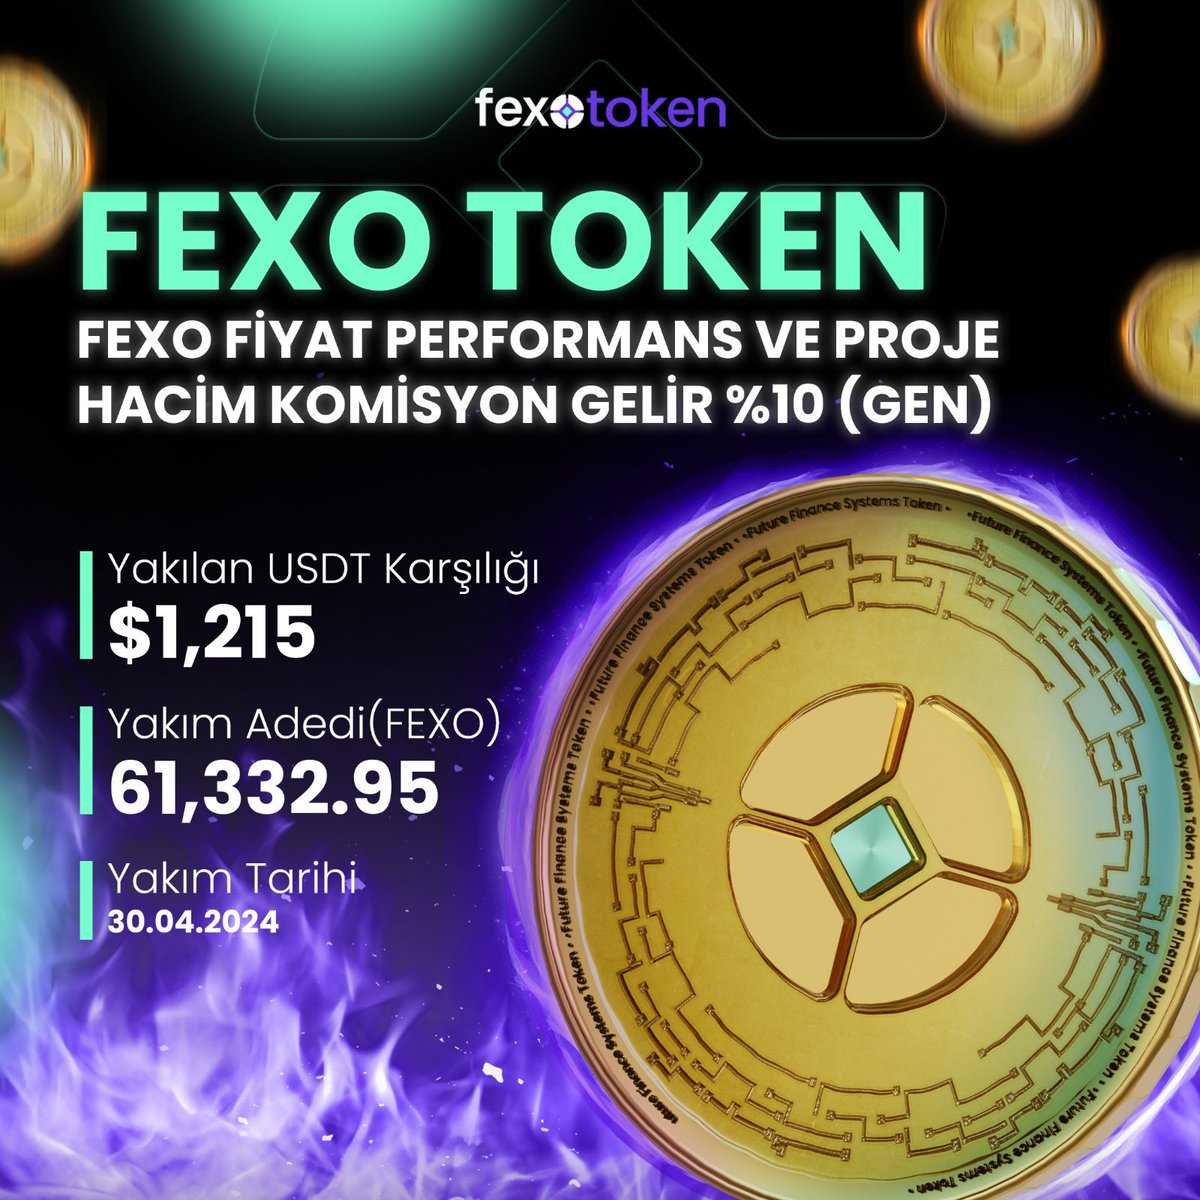 61,332.95 FEXO yakıldı! 🔥💜 #FexoToken